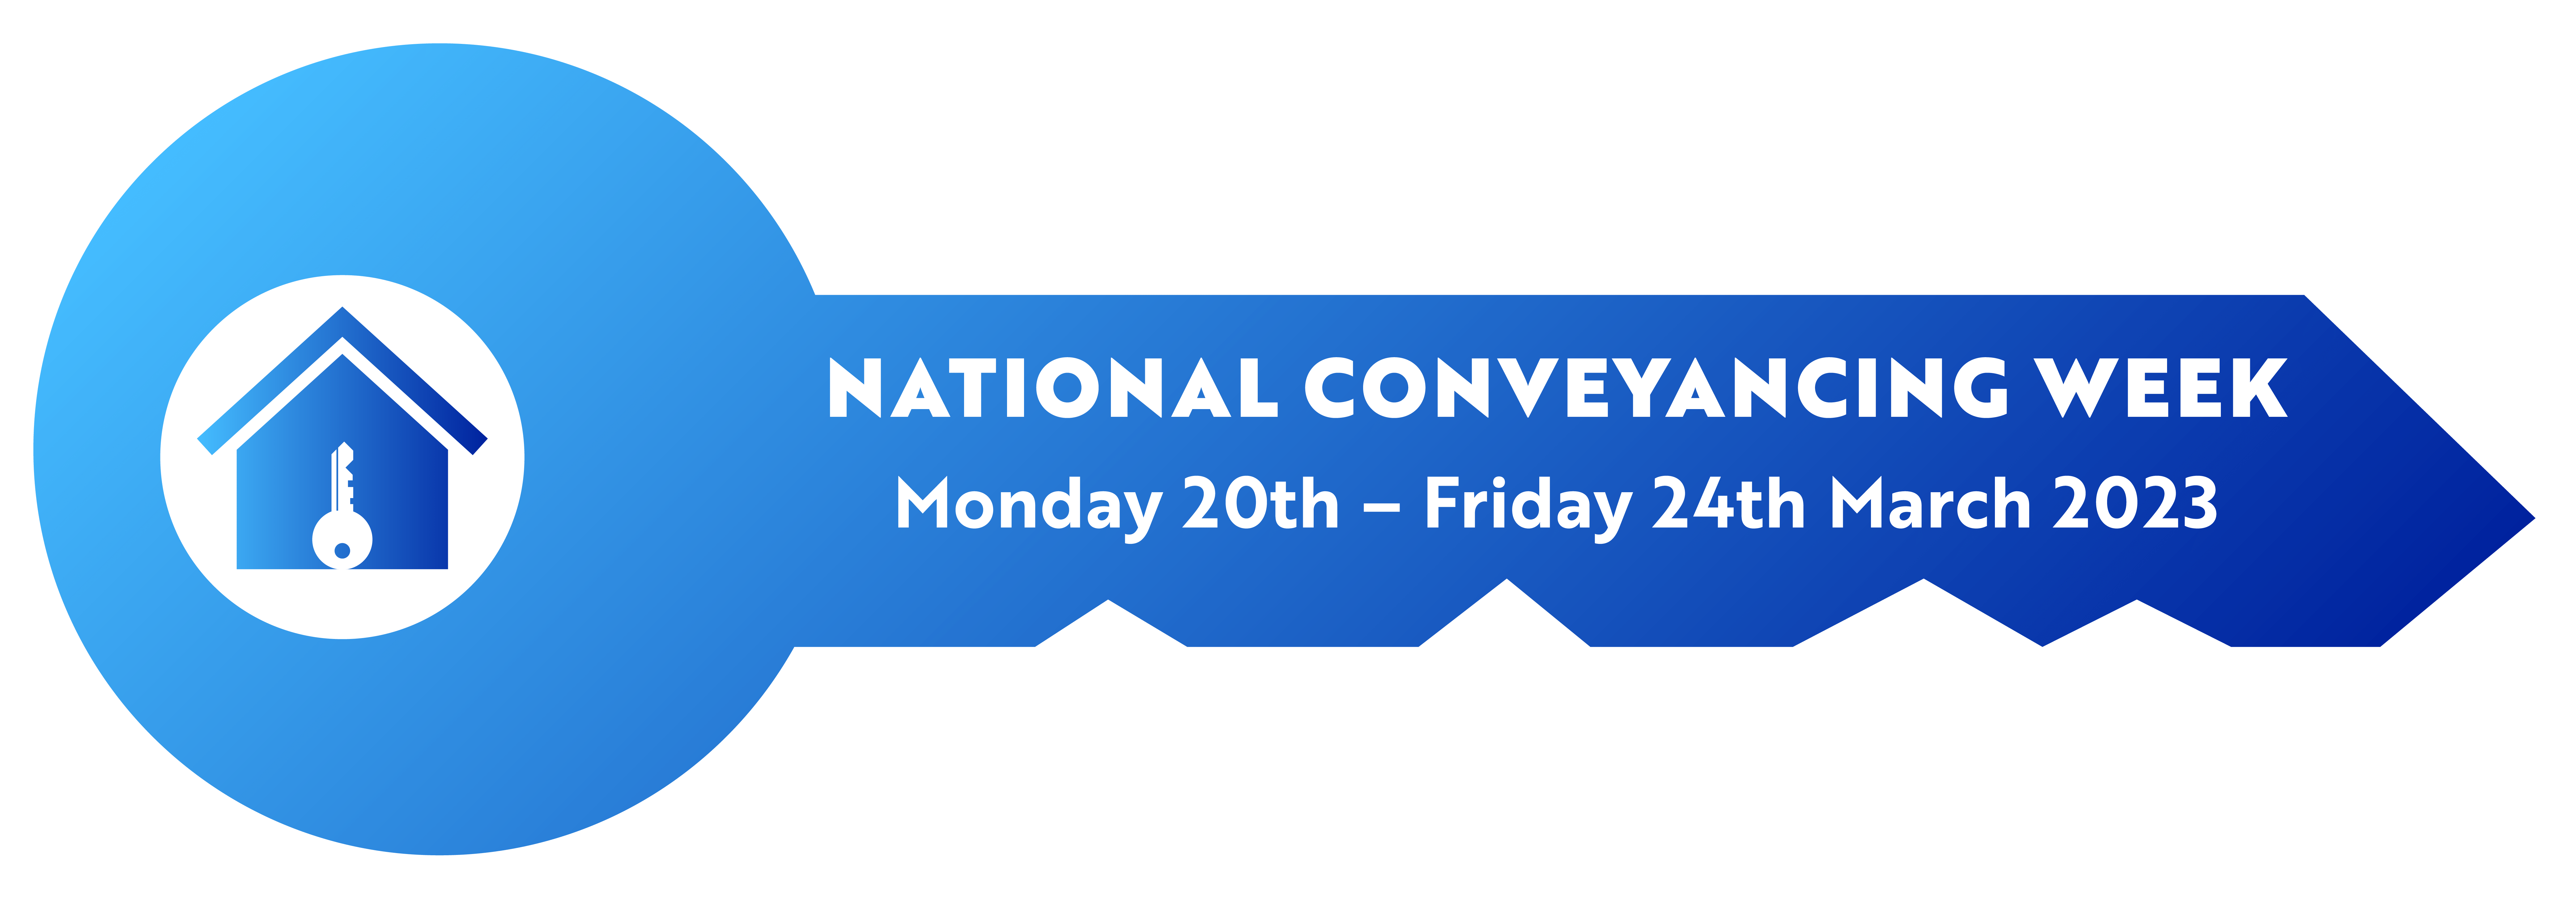 National Conveyancing Week key logo